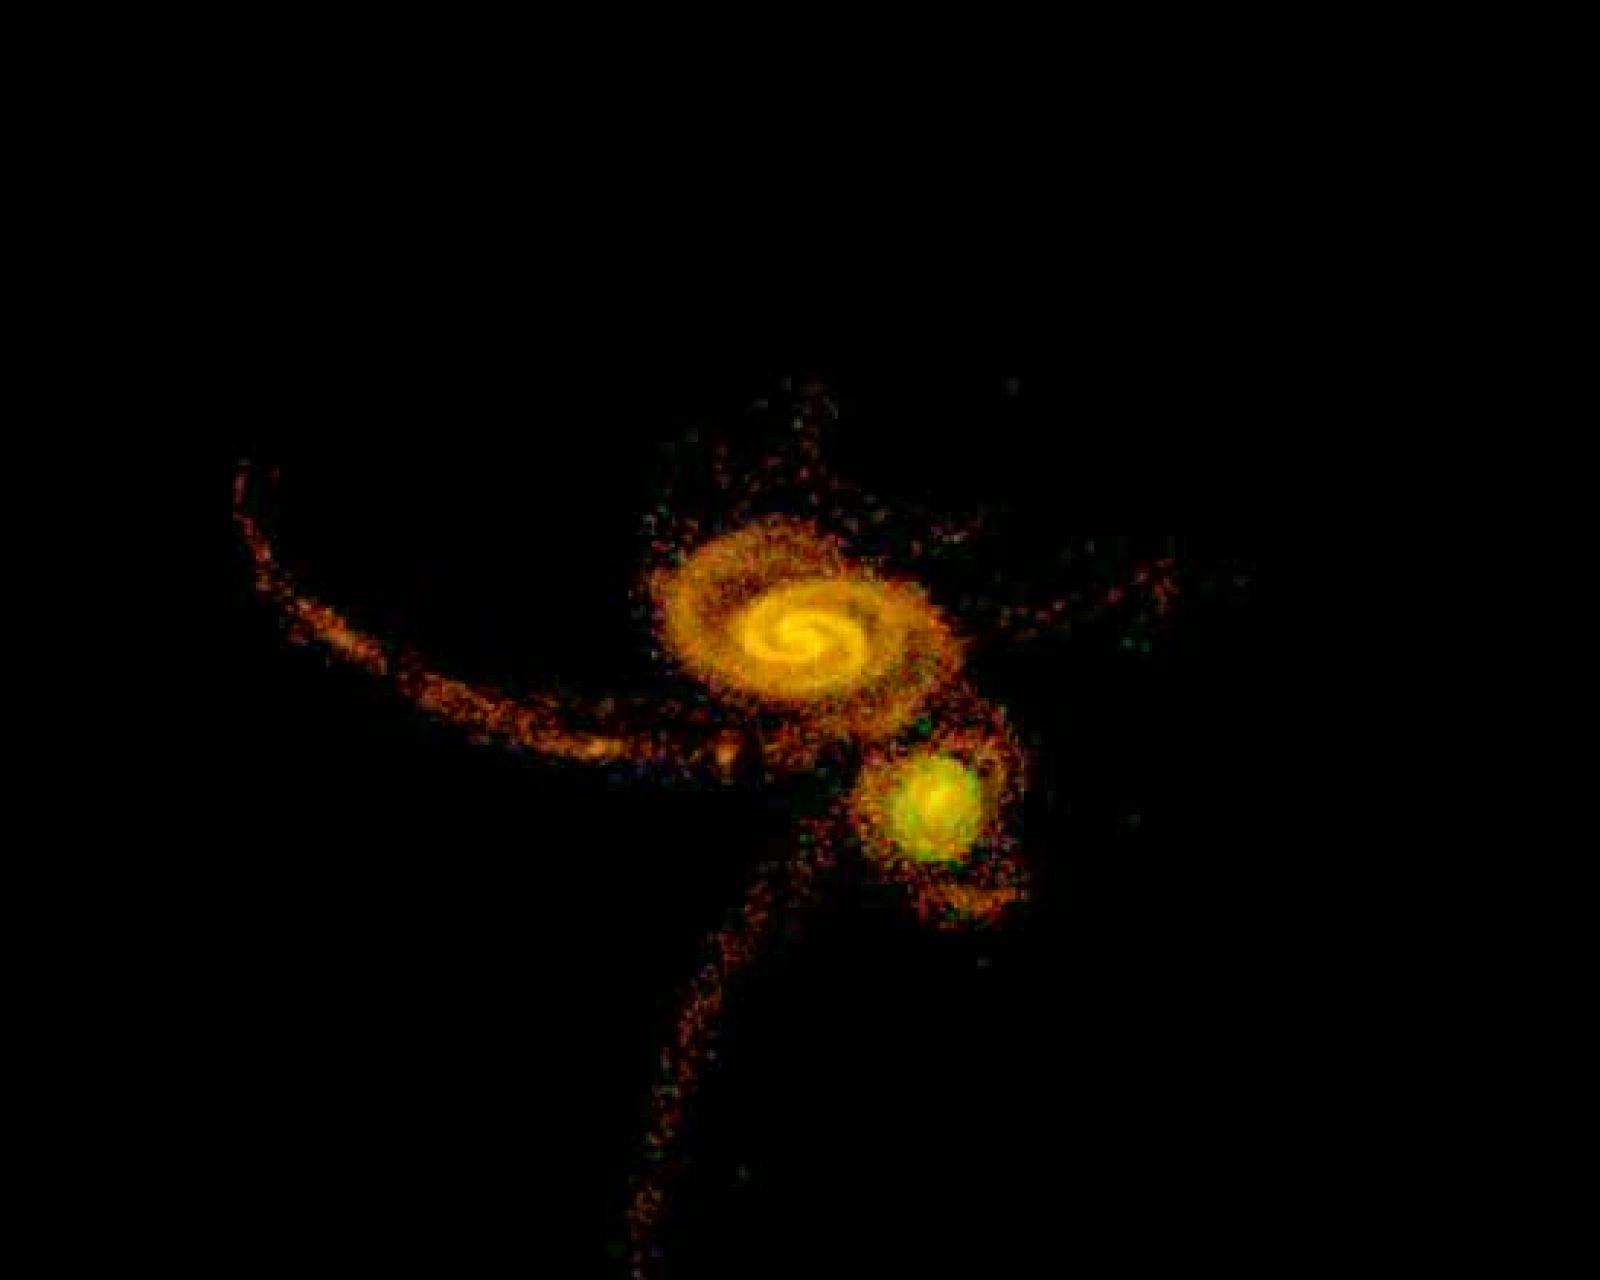 Los últimos estudios revelan que esta gigante espiral cósmica emergió de la violenta colisión de otras dos galaxias más pequeñas.La colisión comenzó hace unos nueve millones de años y el choque intergaláctico no terminó hasta cuatro millones de años